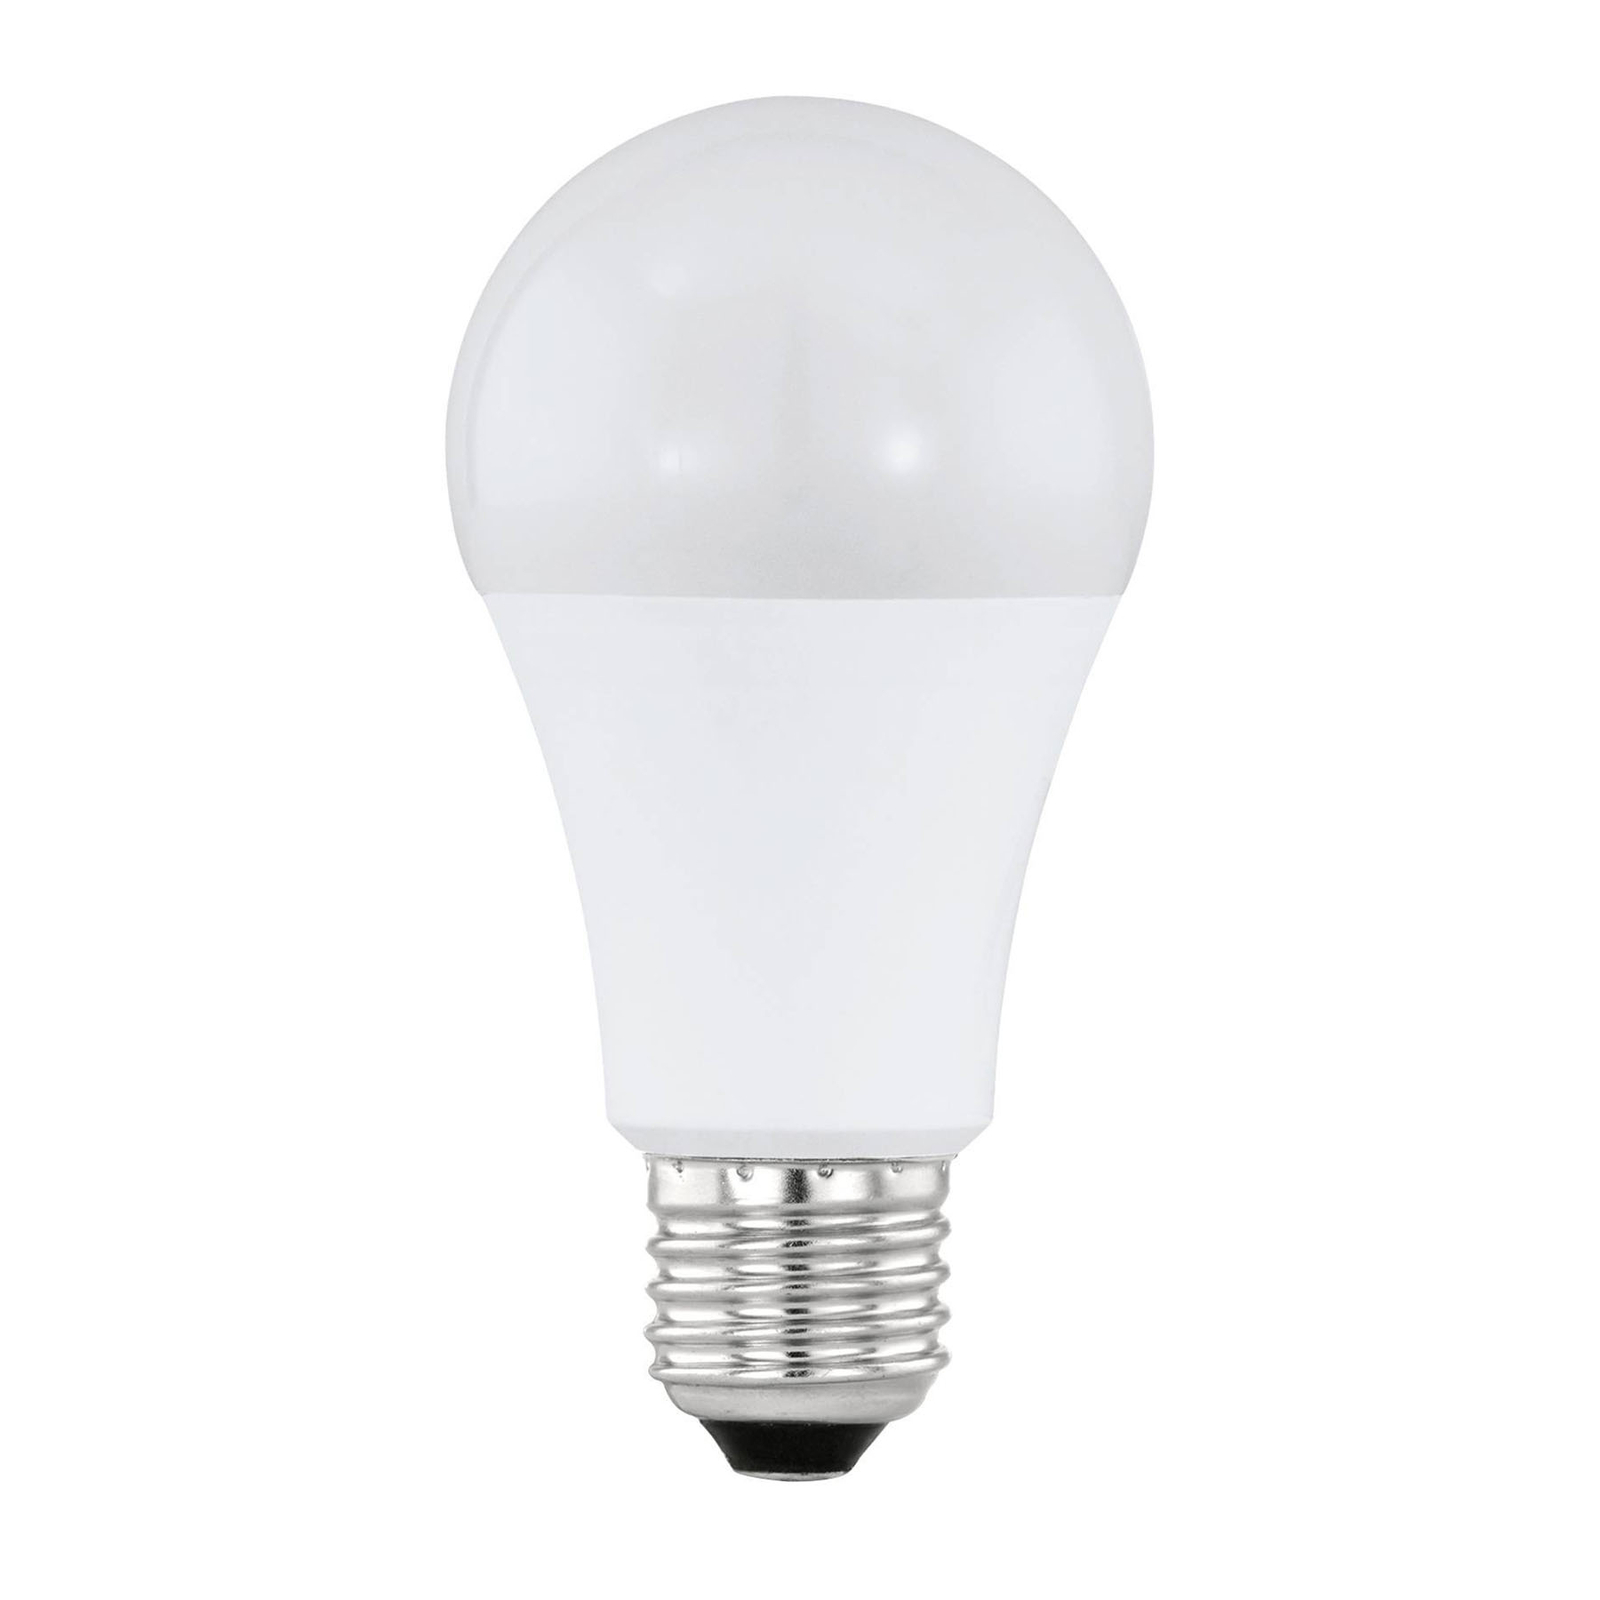 Voorwaarden herberg Handig LED lamp E27 A60 9W 2700K 830 lm dag/nachtsensor | Lampen24.nl